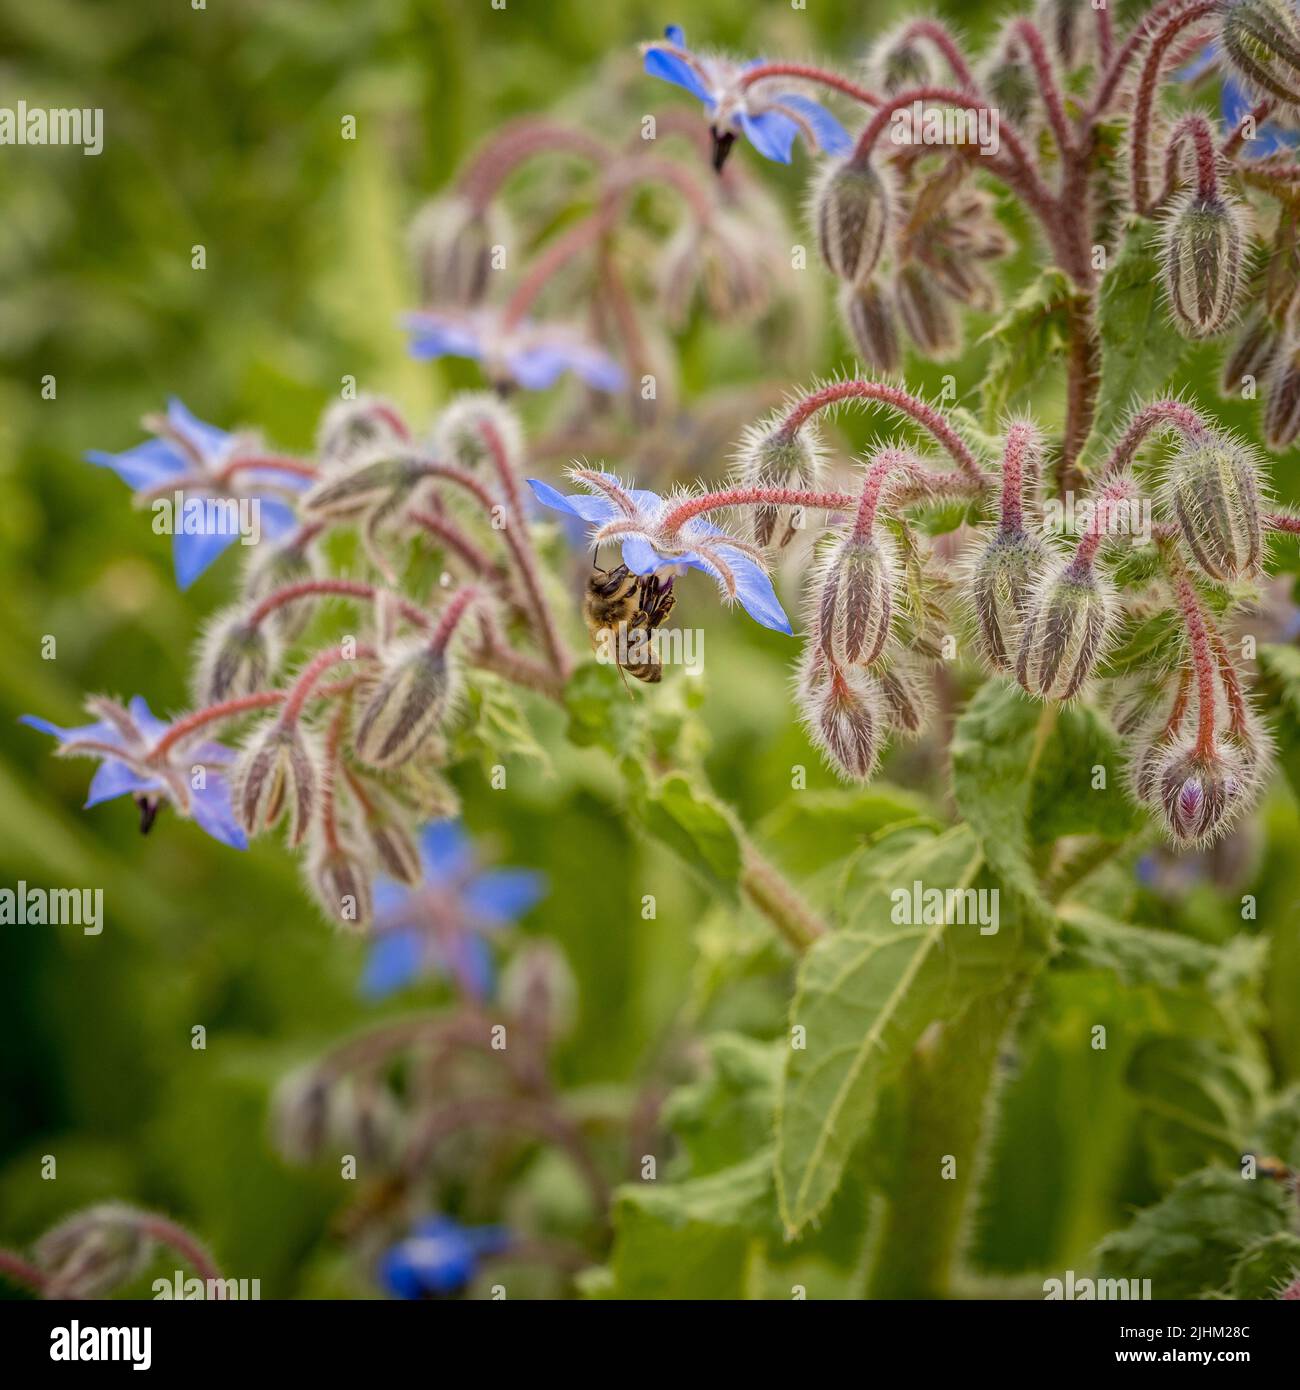 Primer plano de una abeja que poliniza una flor de borraja azul que crece en un jardín del Reino Unido. Foto de stock